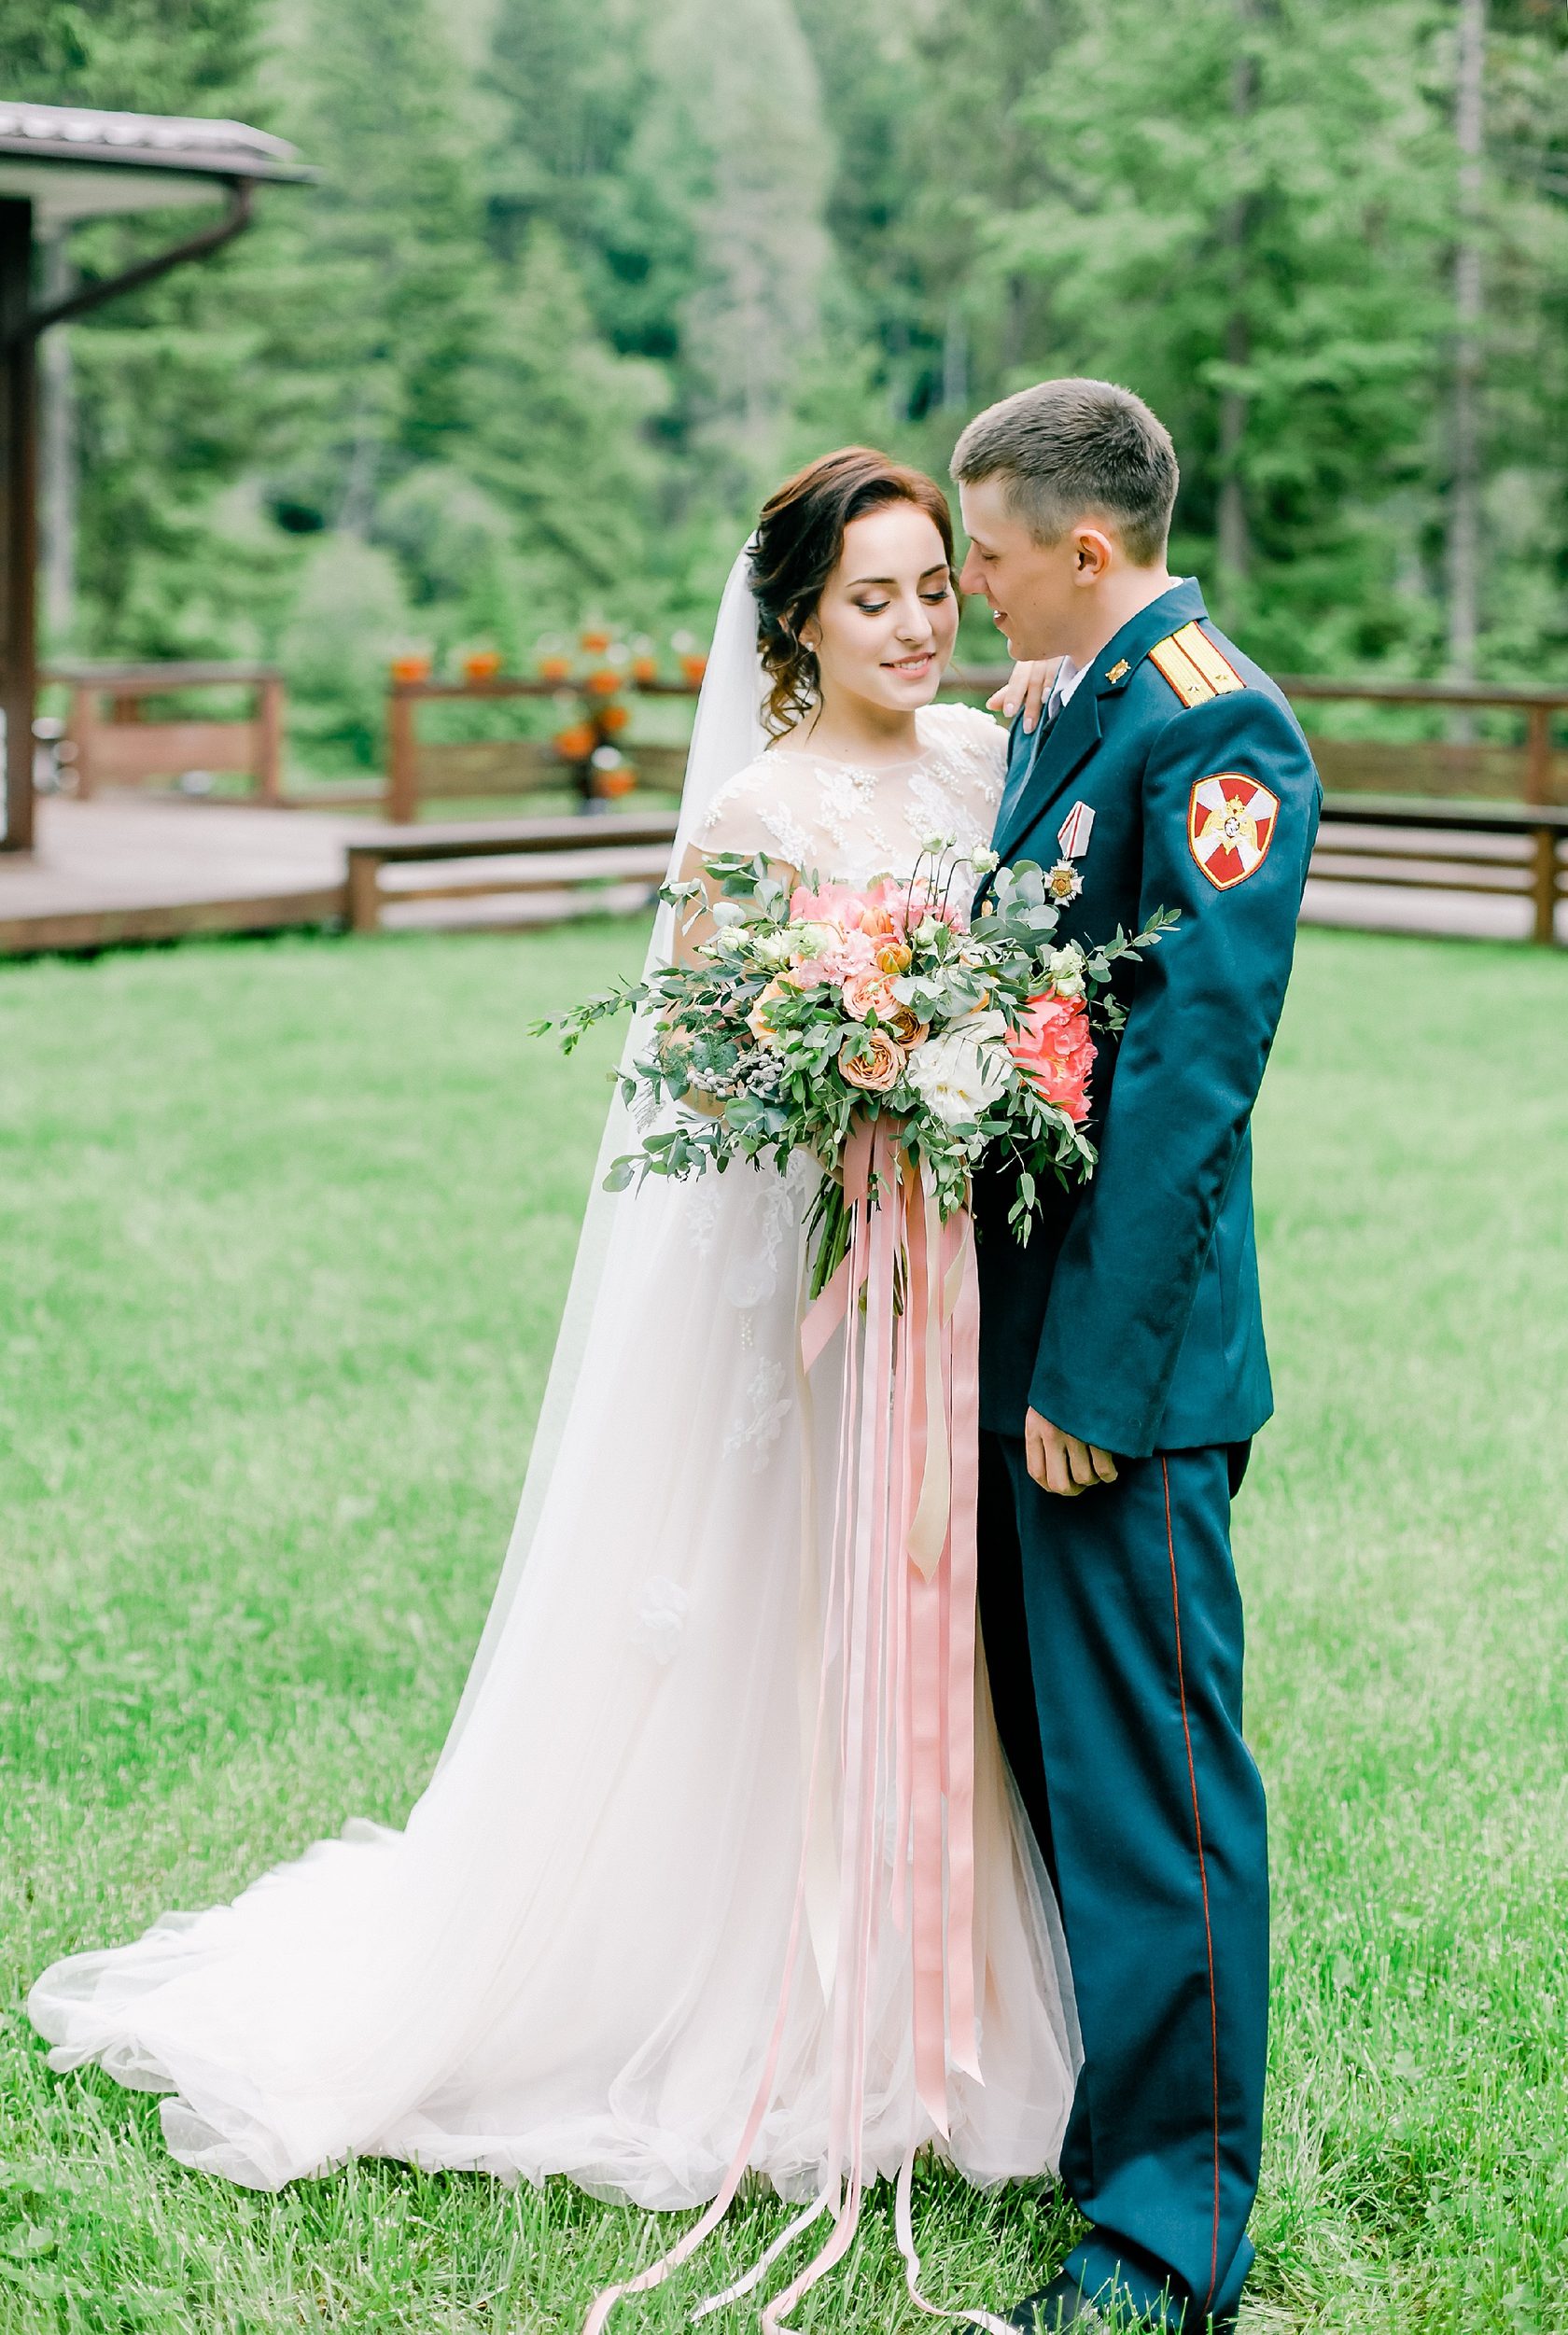 Свадьба в военном стиле